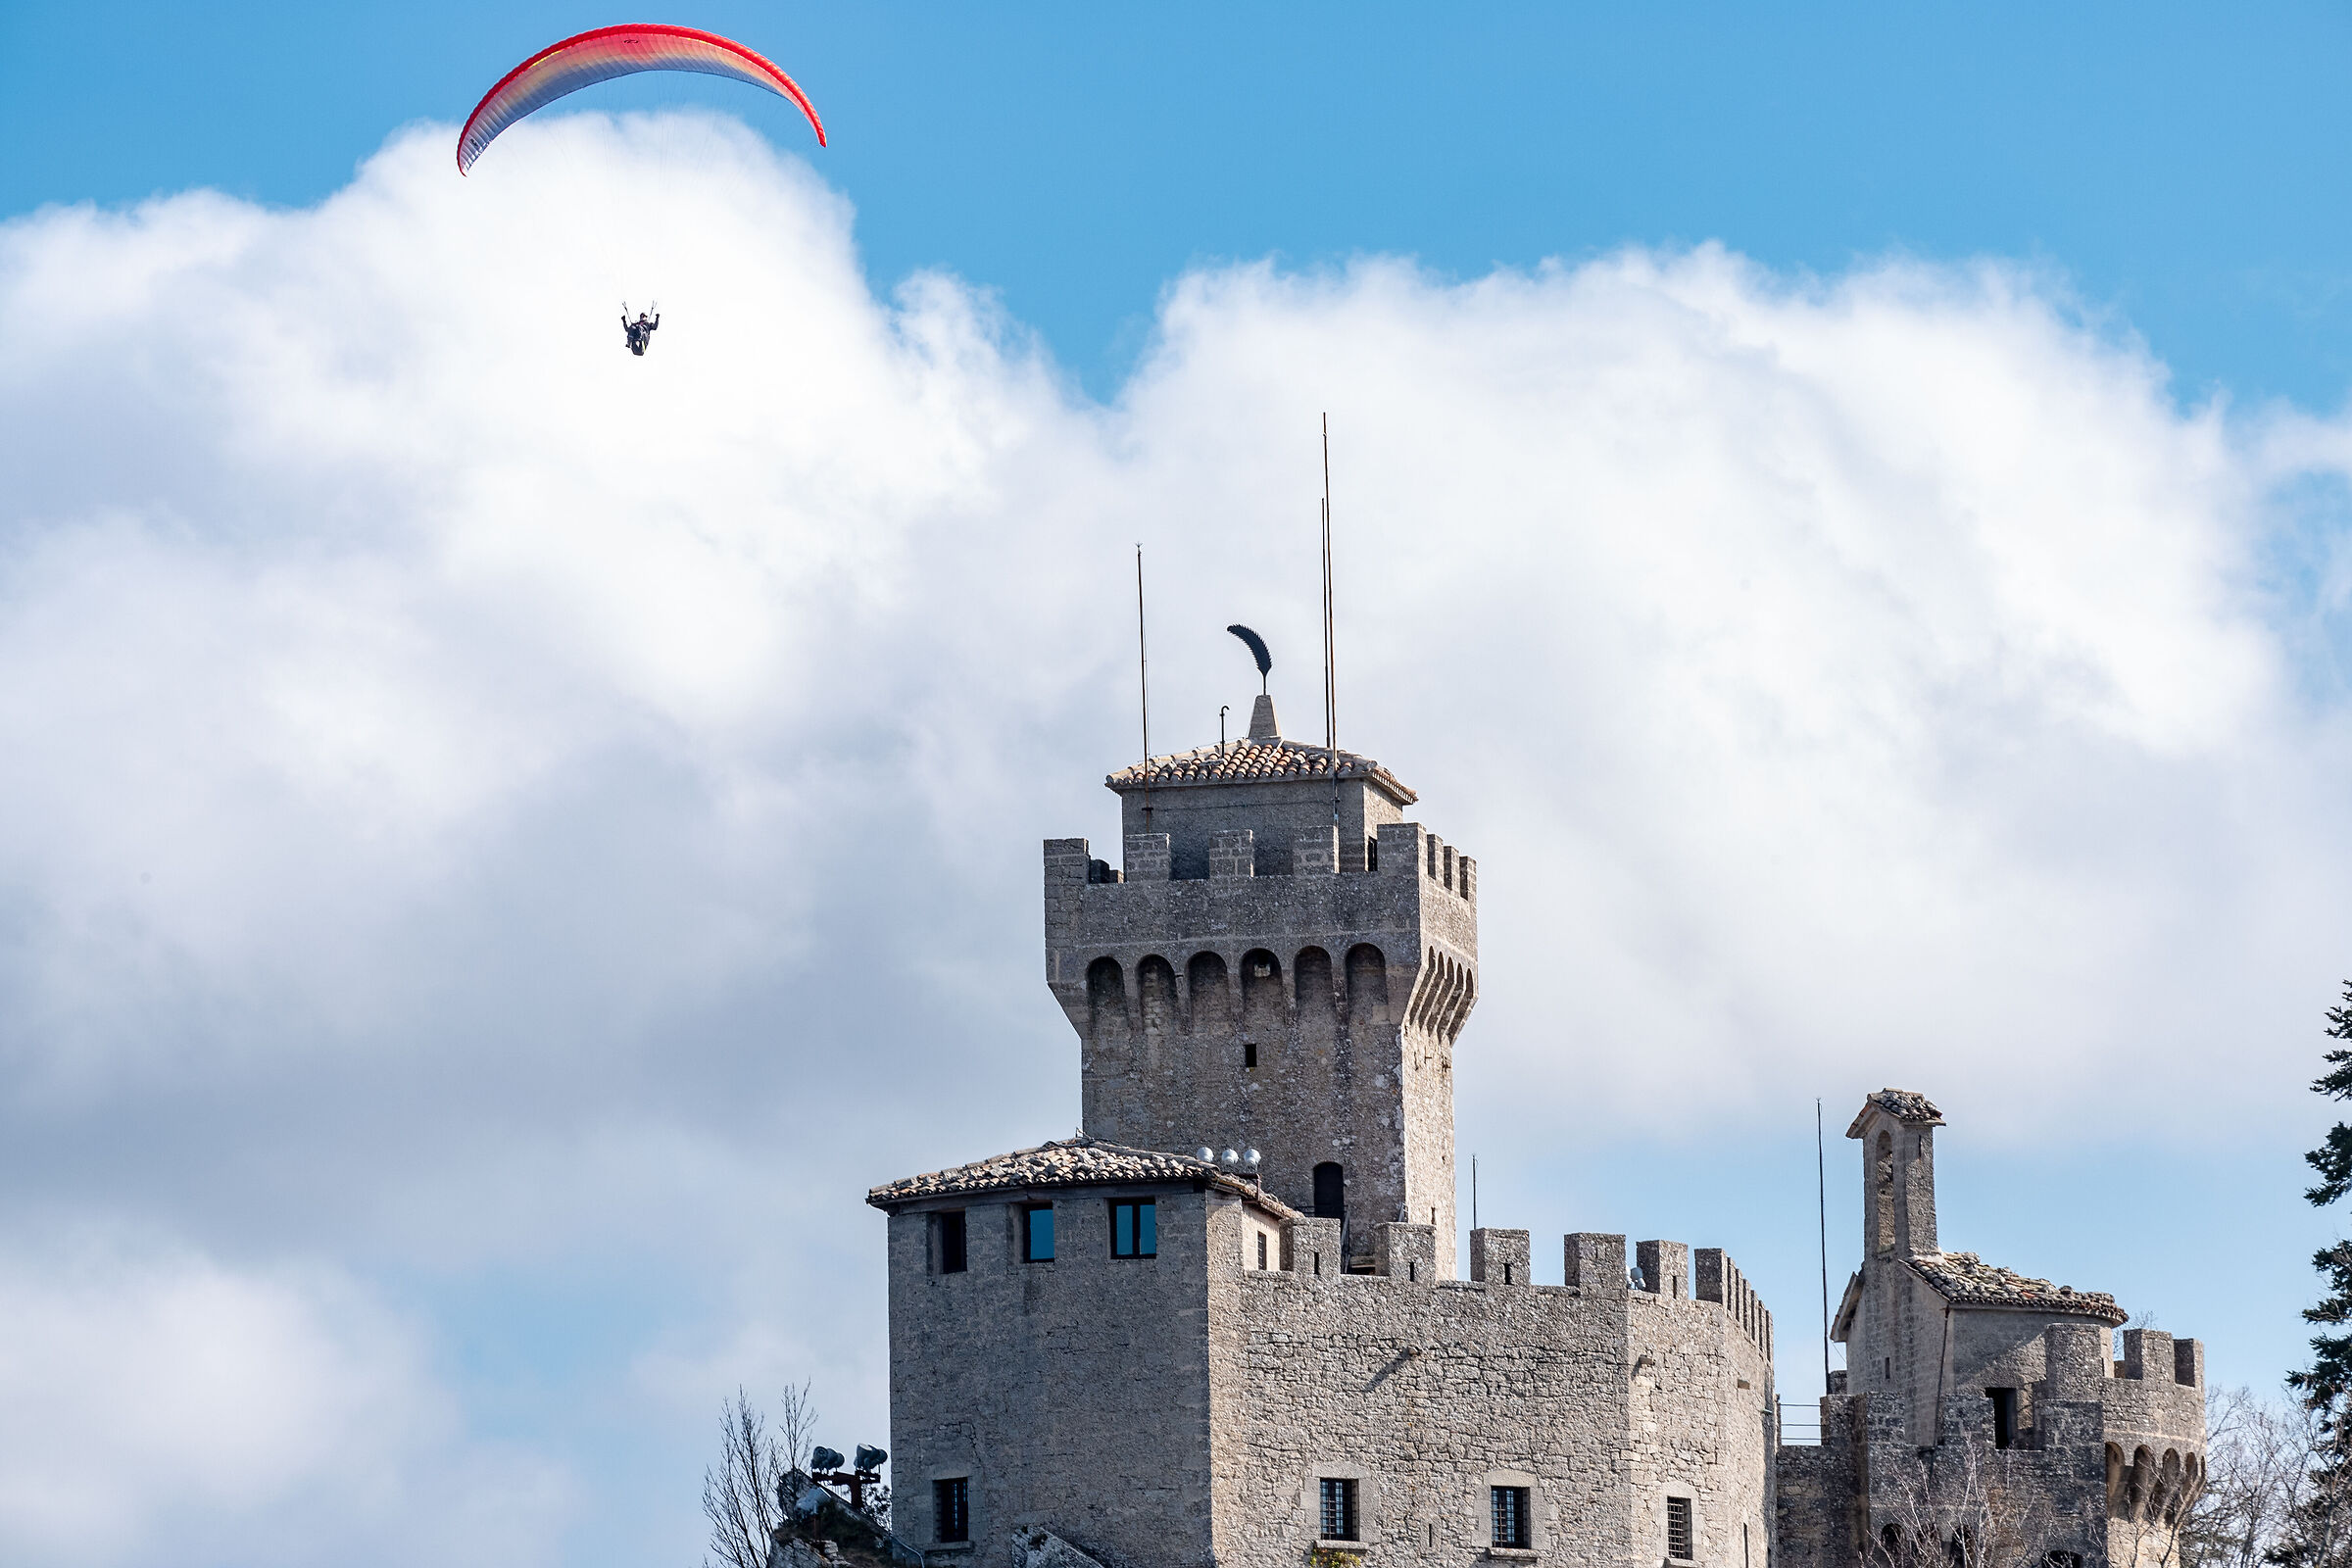 Volando sui tetti del castello...